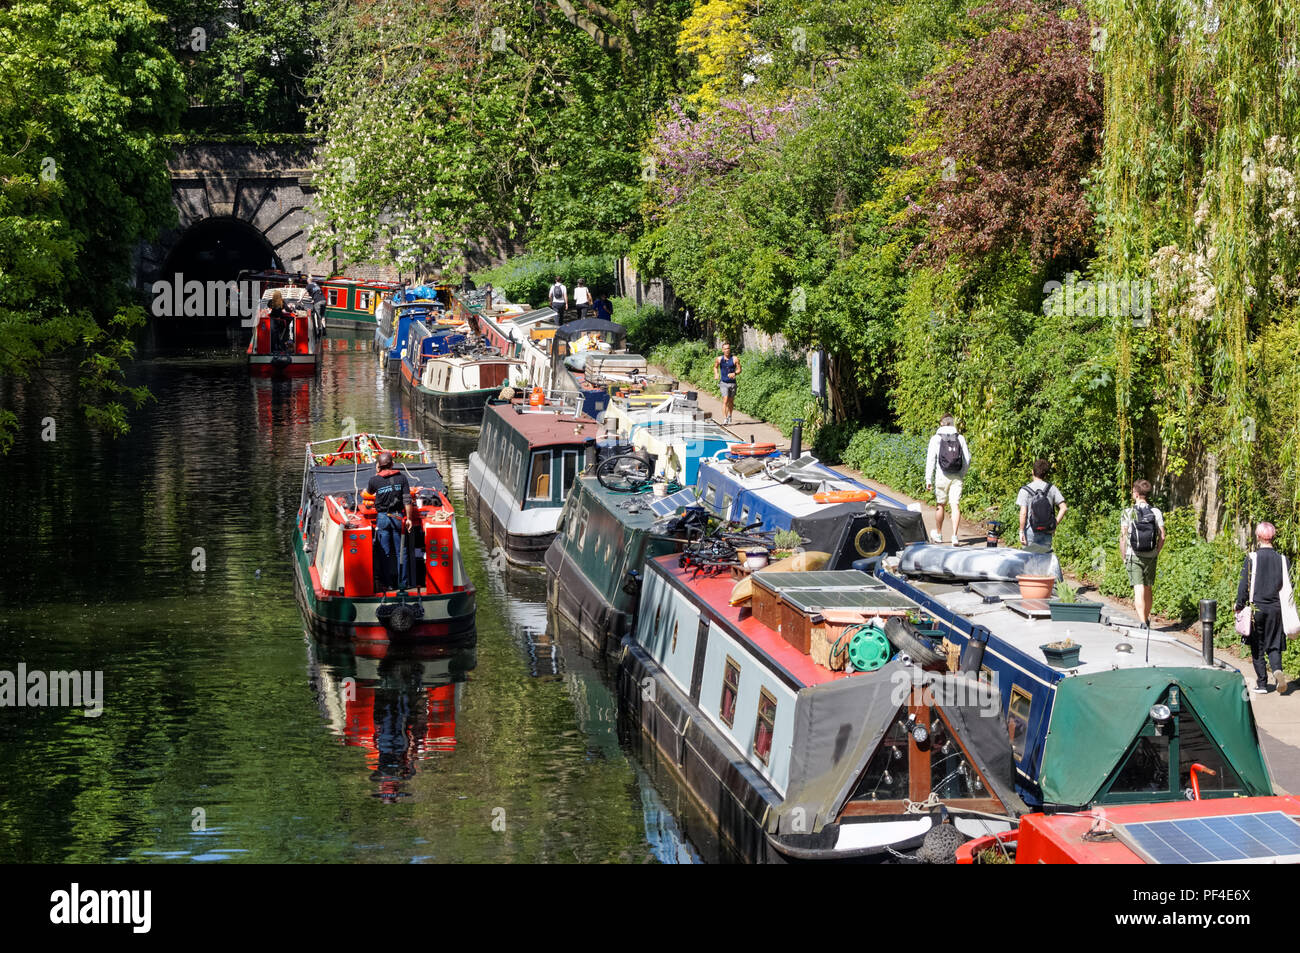 Péniches et narrowboats en regard de Tunnel Islington sur le Regent's Canal, Londres Angleterre Royaume-Uni UK Banque D'Images